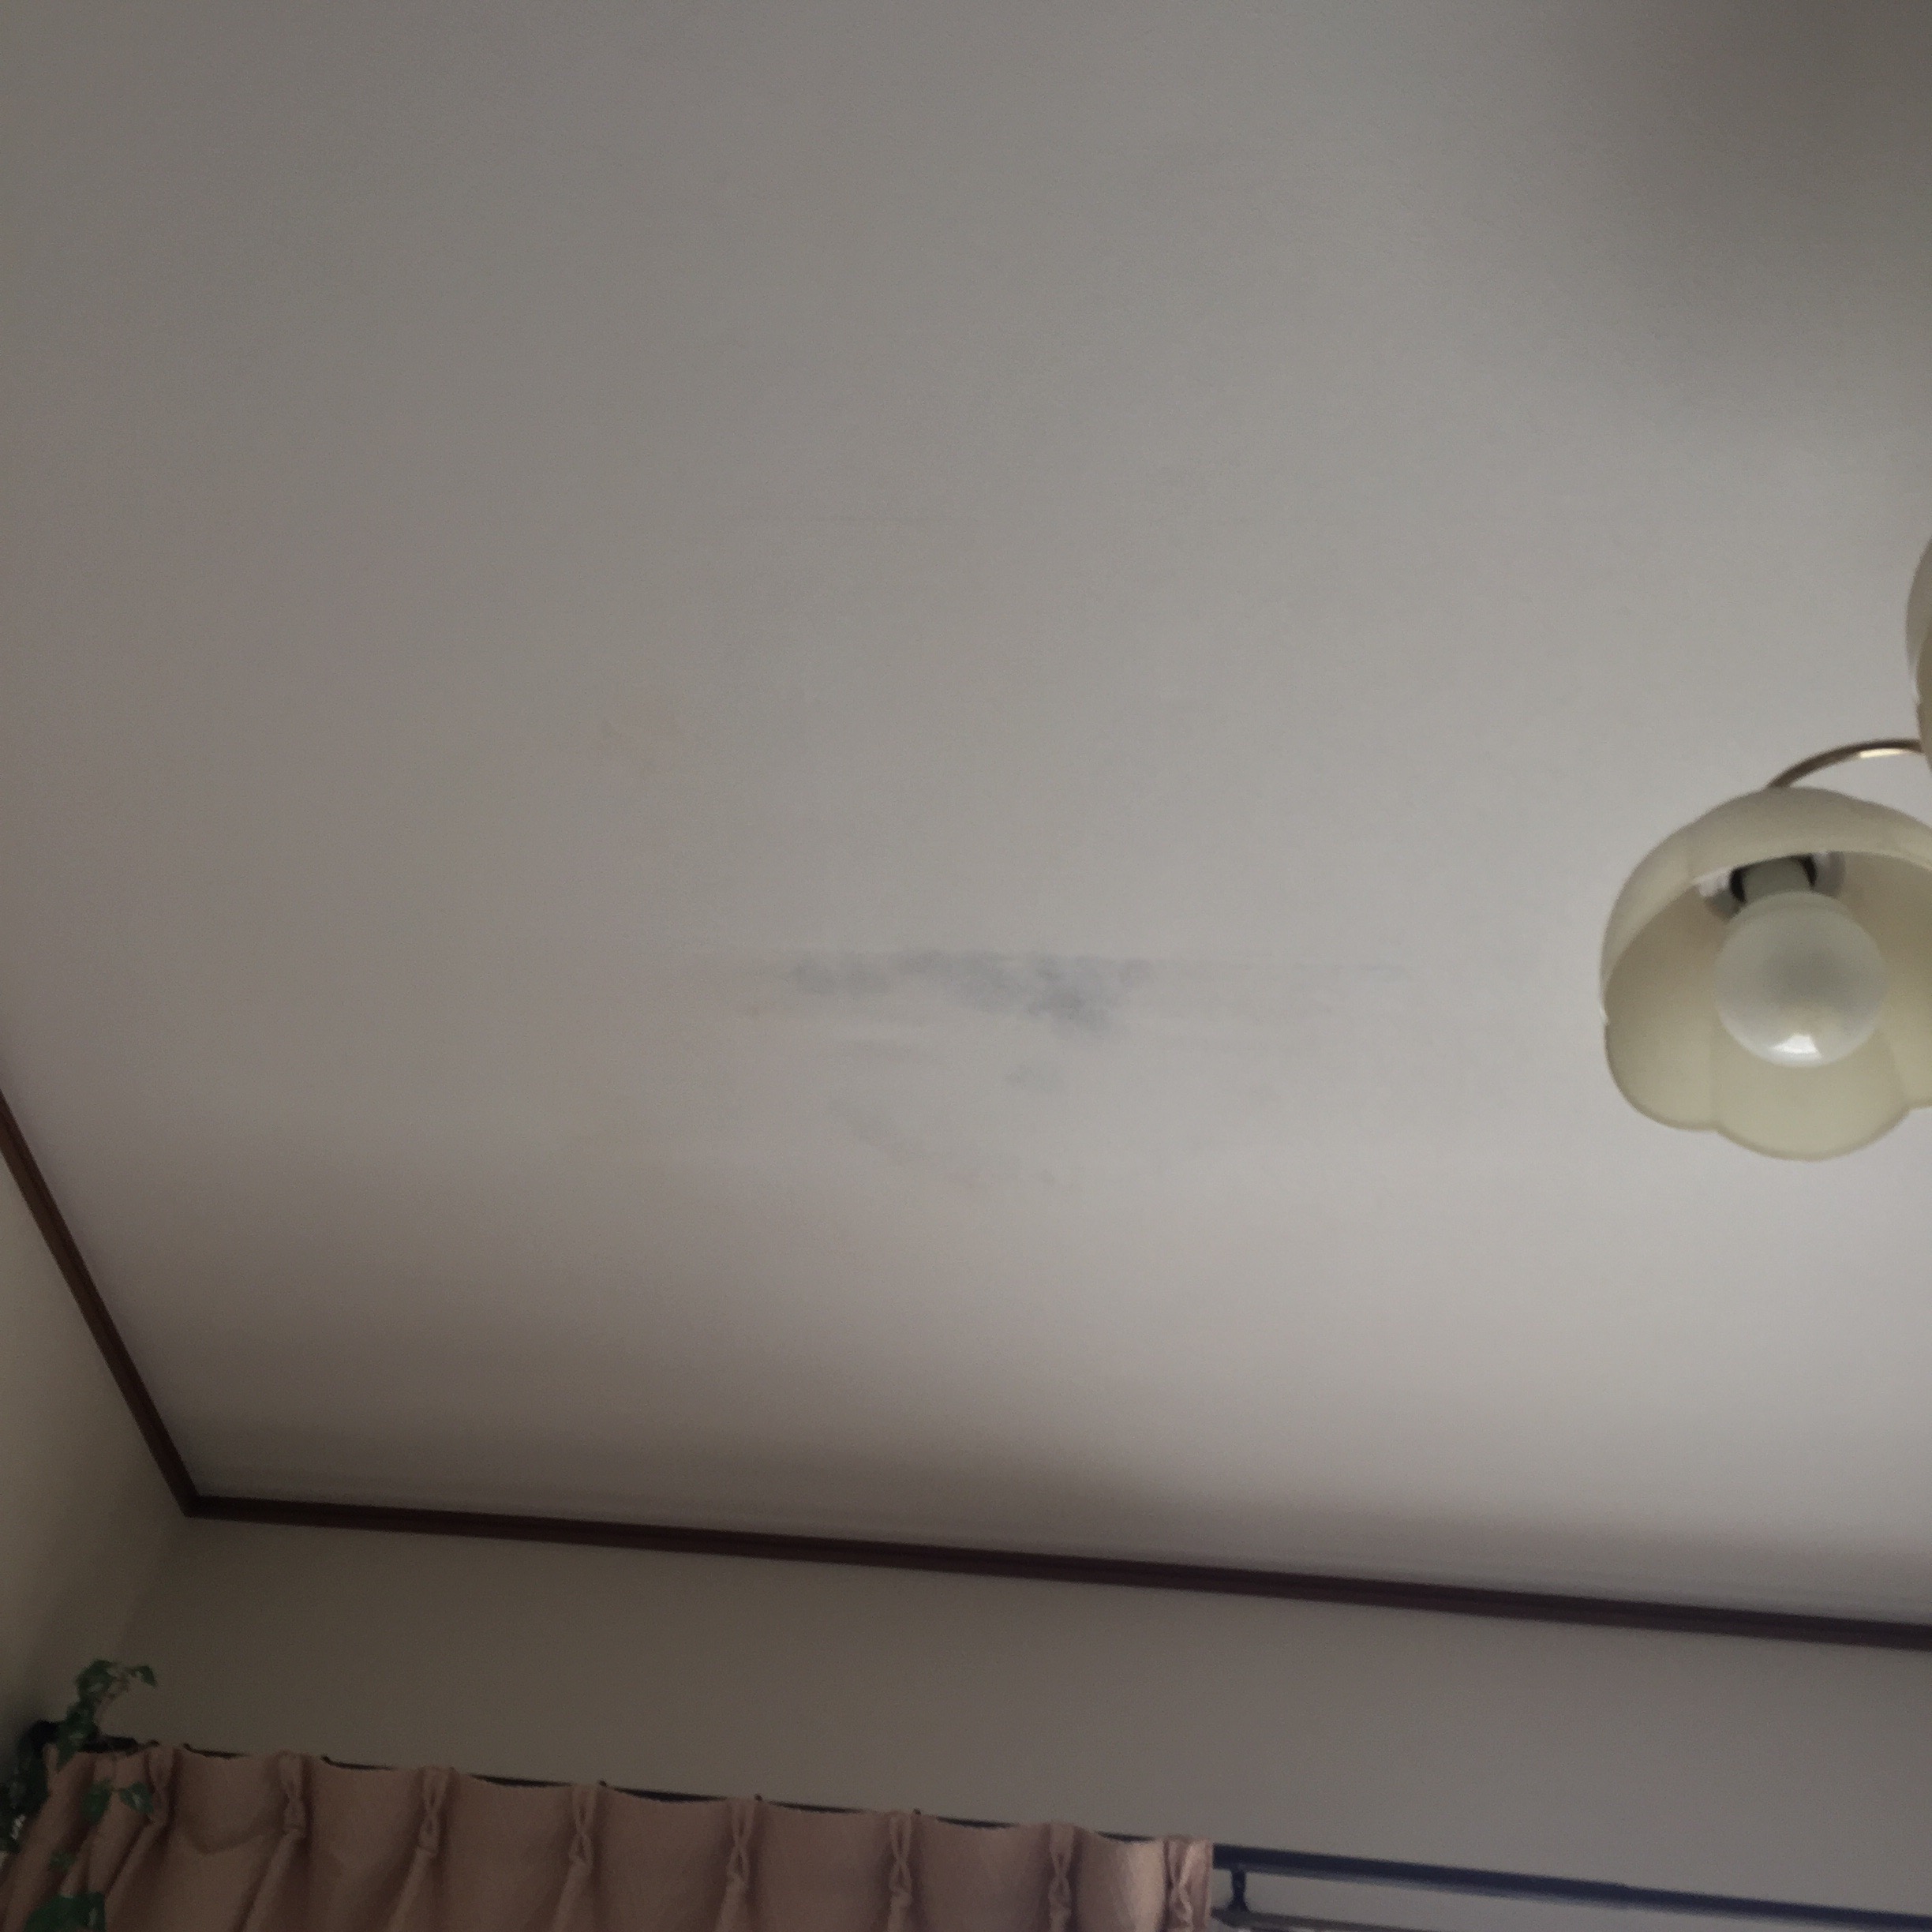 リビング天井の雨漏り修理例 ウレタン防水 安価に抑えるコツ 雨漏りレスキュー 屋根外壁の雨漏りのことならお任せください 千葉 首都圏は即日対応